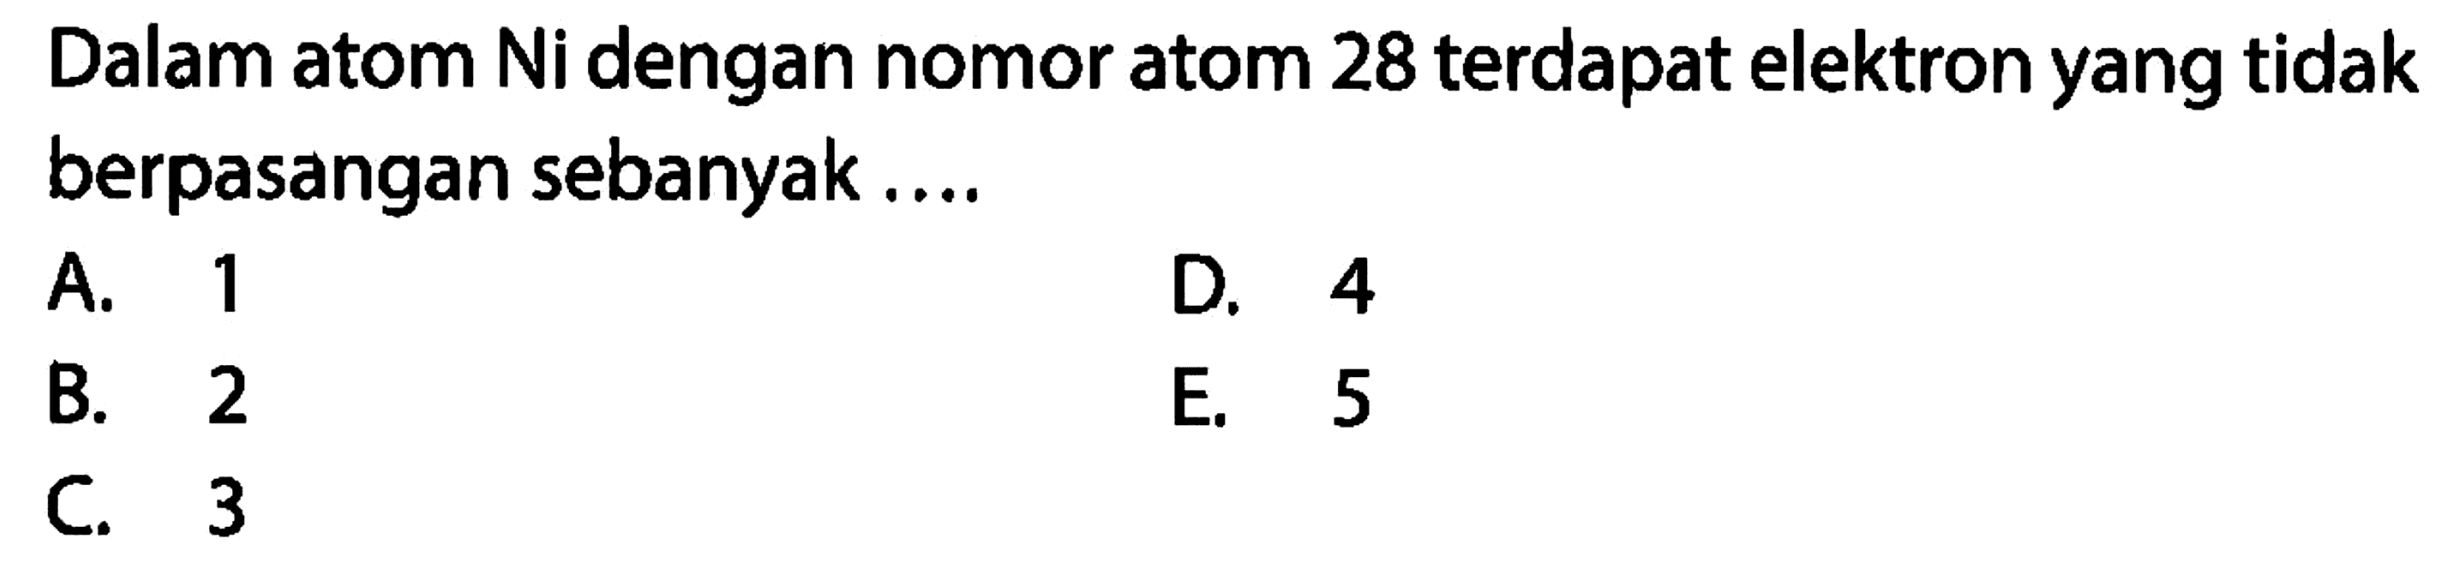 Dalam atom Ni dengan nomor atom 28 terdapat elektron yang tidak berpasangan sebanyak....